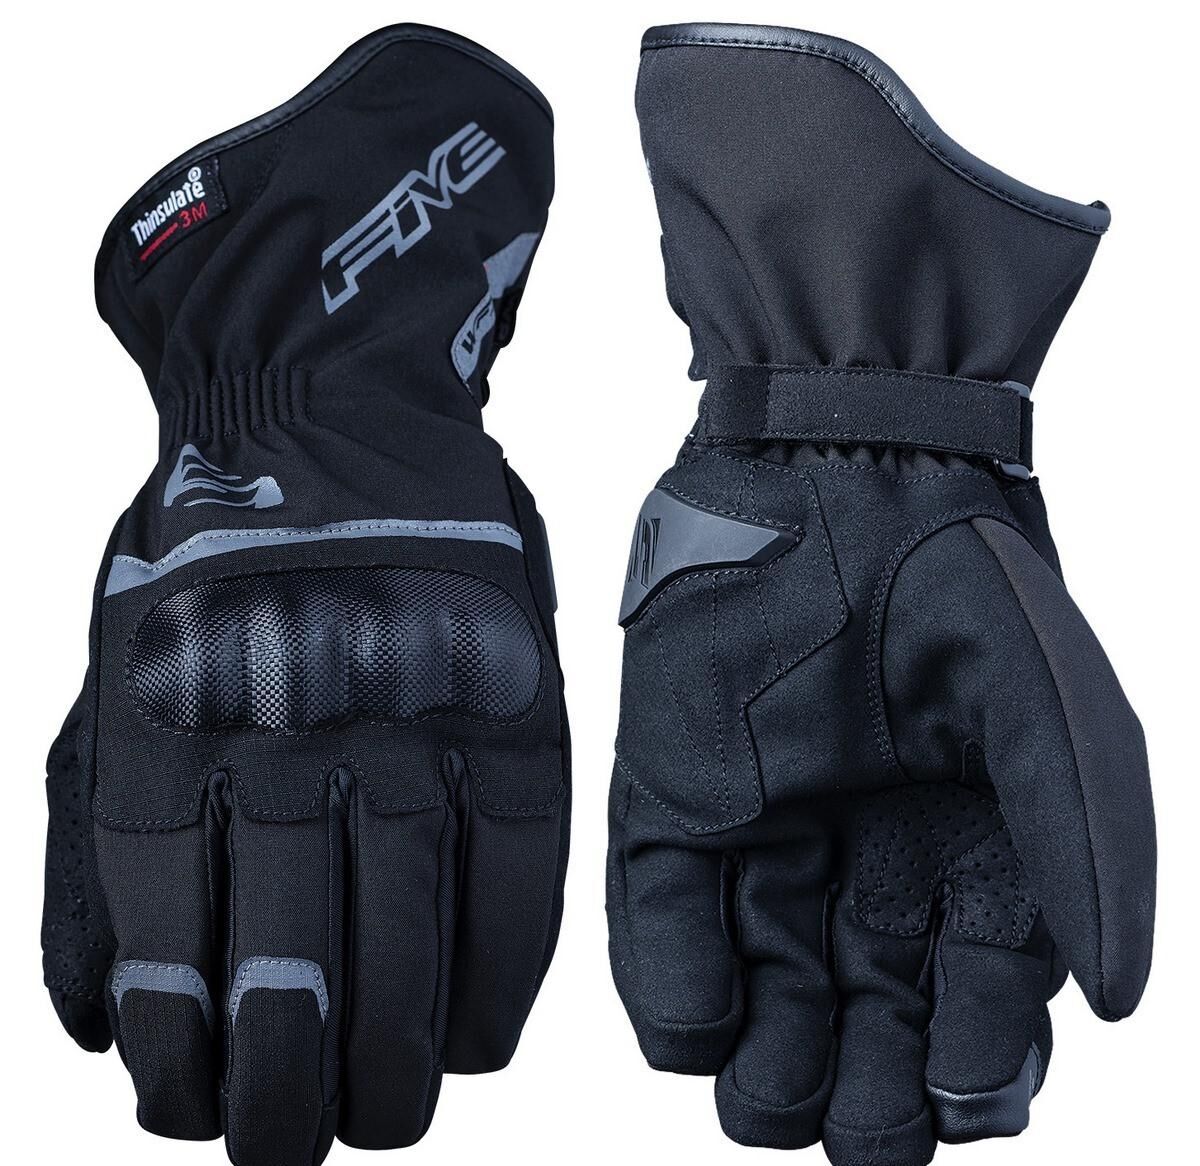 Five Gloves Gant hiver wfx3 wp (homologation en13594-2015) black taille 2xl marque